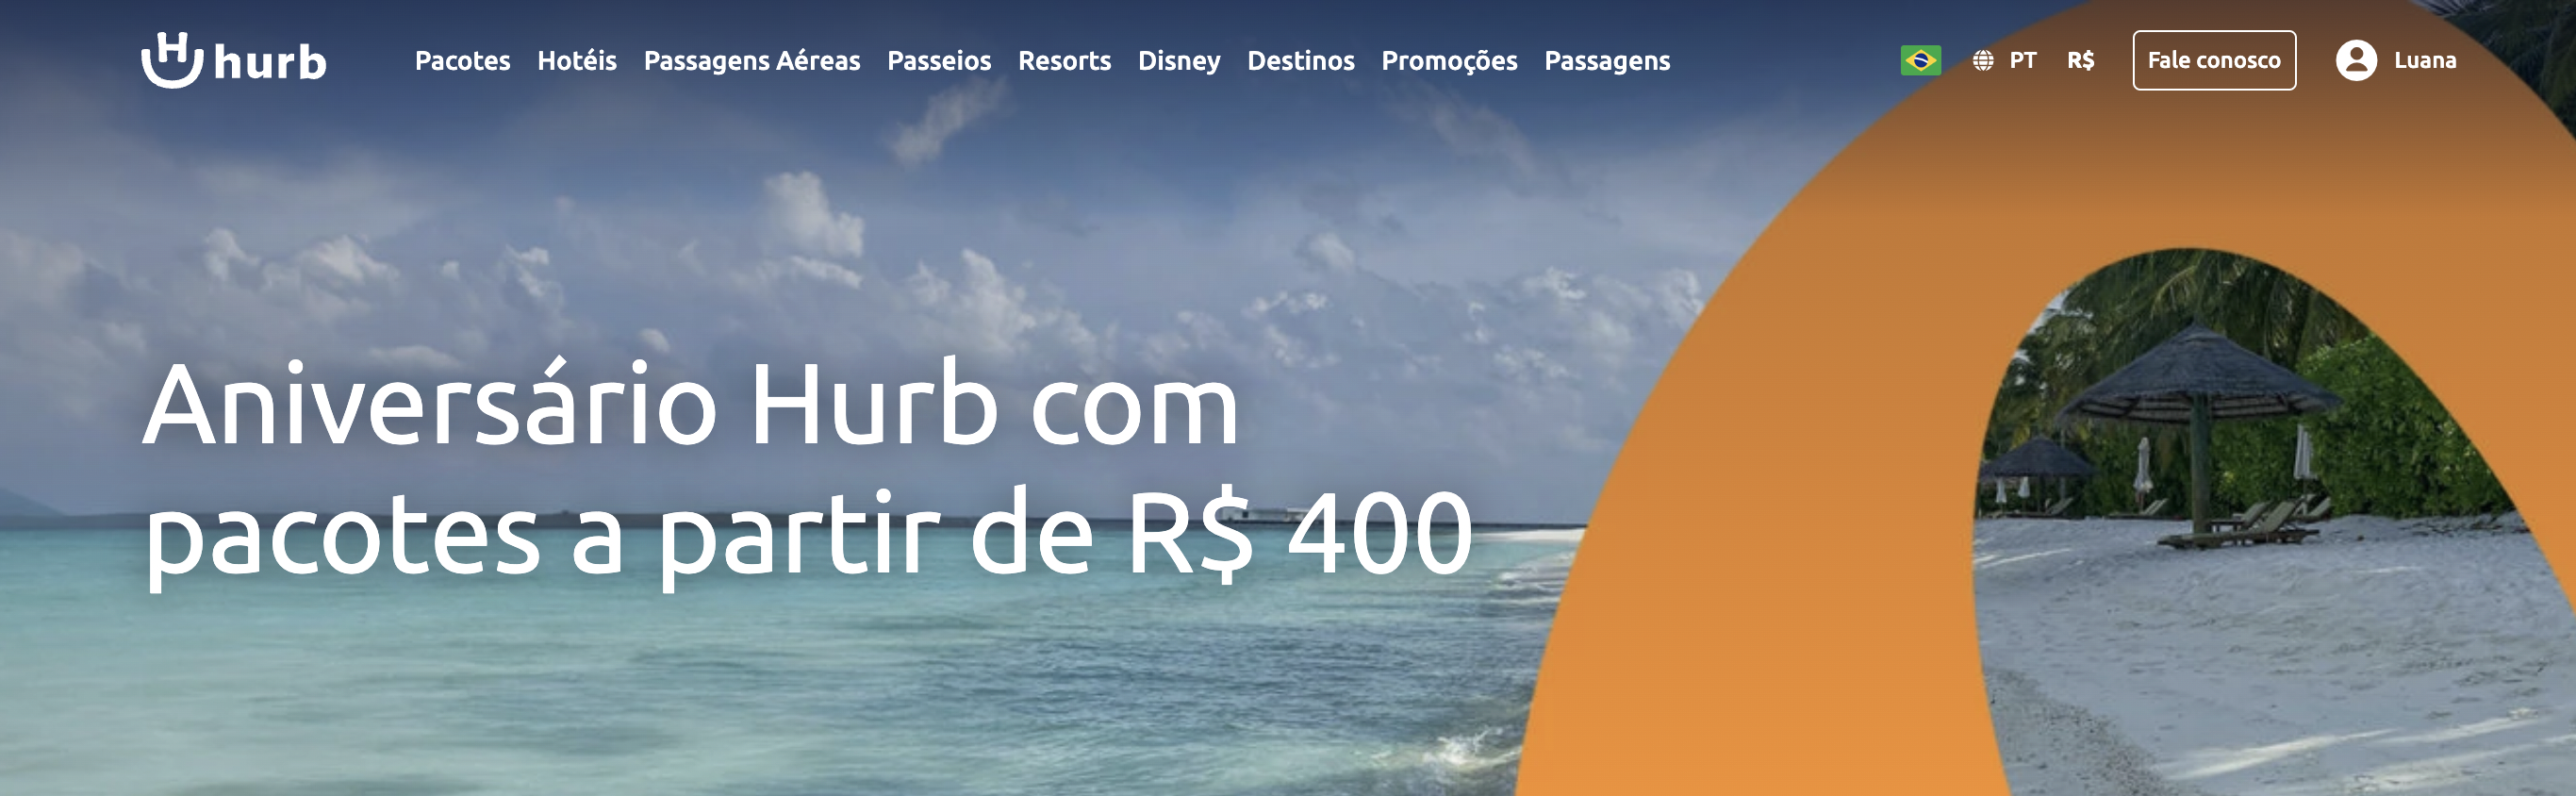 O banner do website da Hurb destaca uma promoção de aniversário com pacotes a partir de R$ 400, exibindo uma paisagem de praia tranquila e tropical com guarda-sóis de palha e águas cristalinas como plano de fundo.